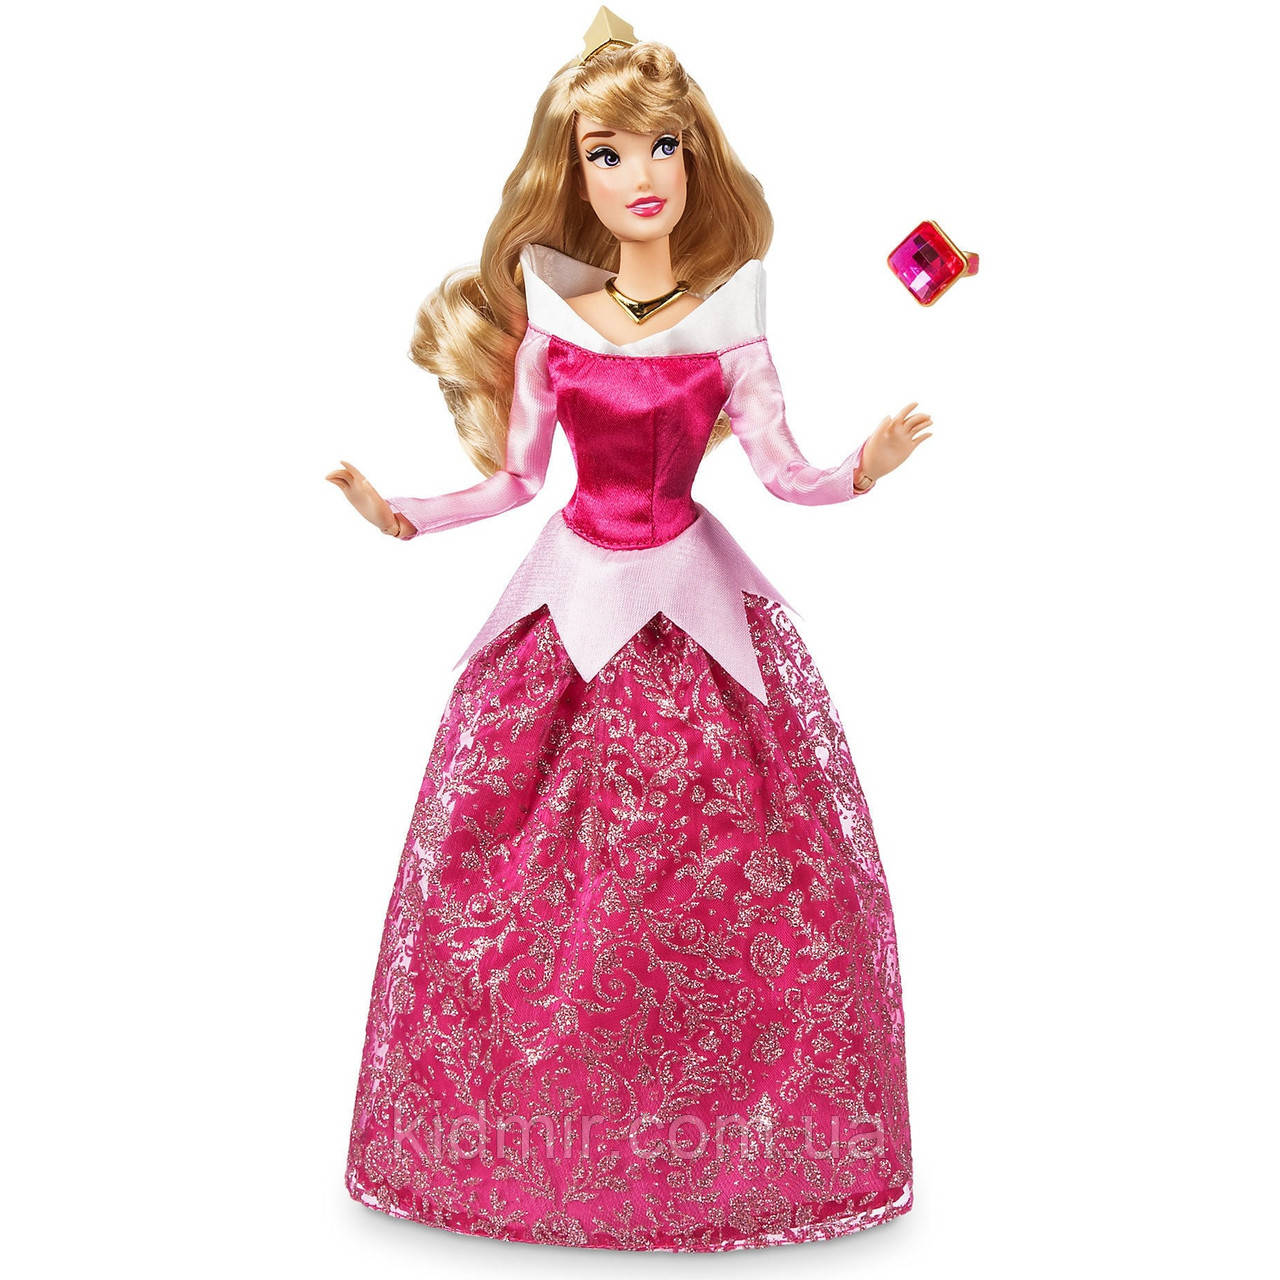 Лялька Аврора Принцеса Дісней Disney Princess Aurora 6001040900511P